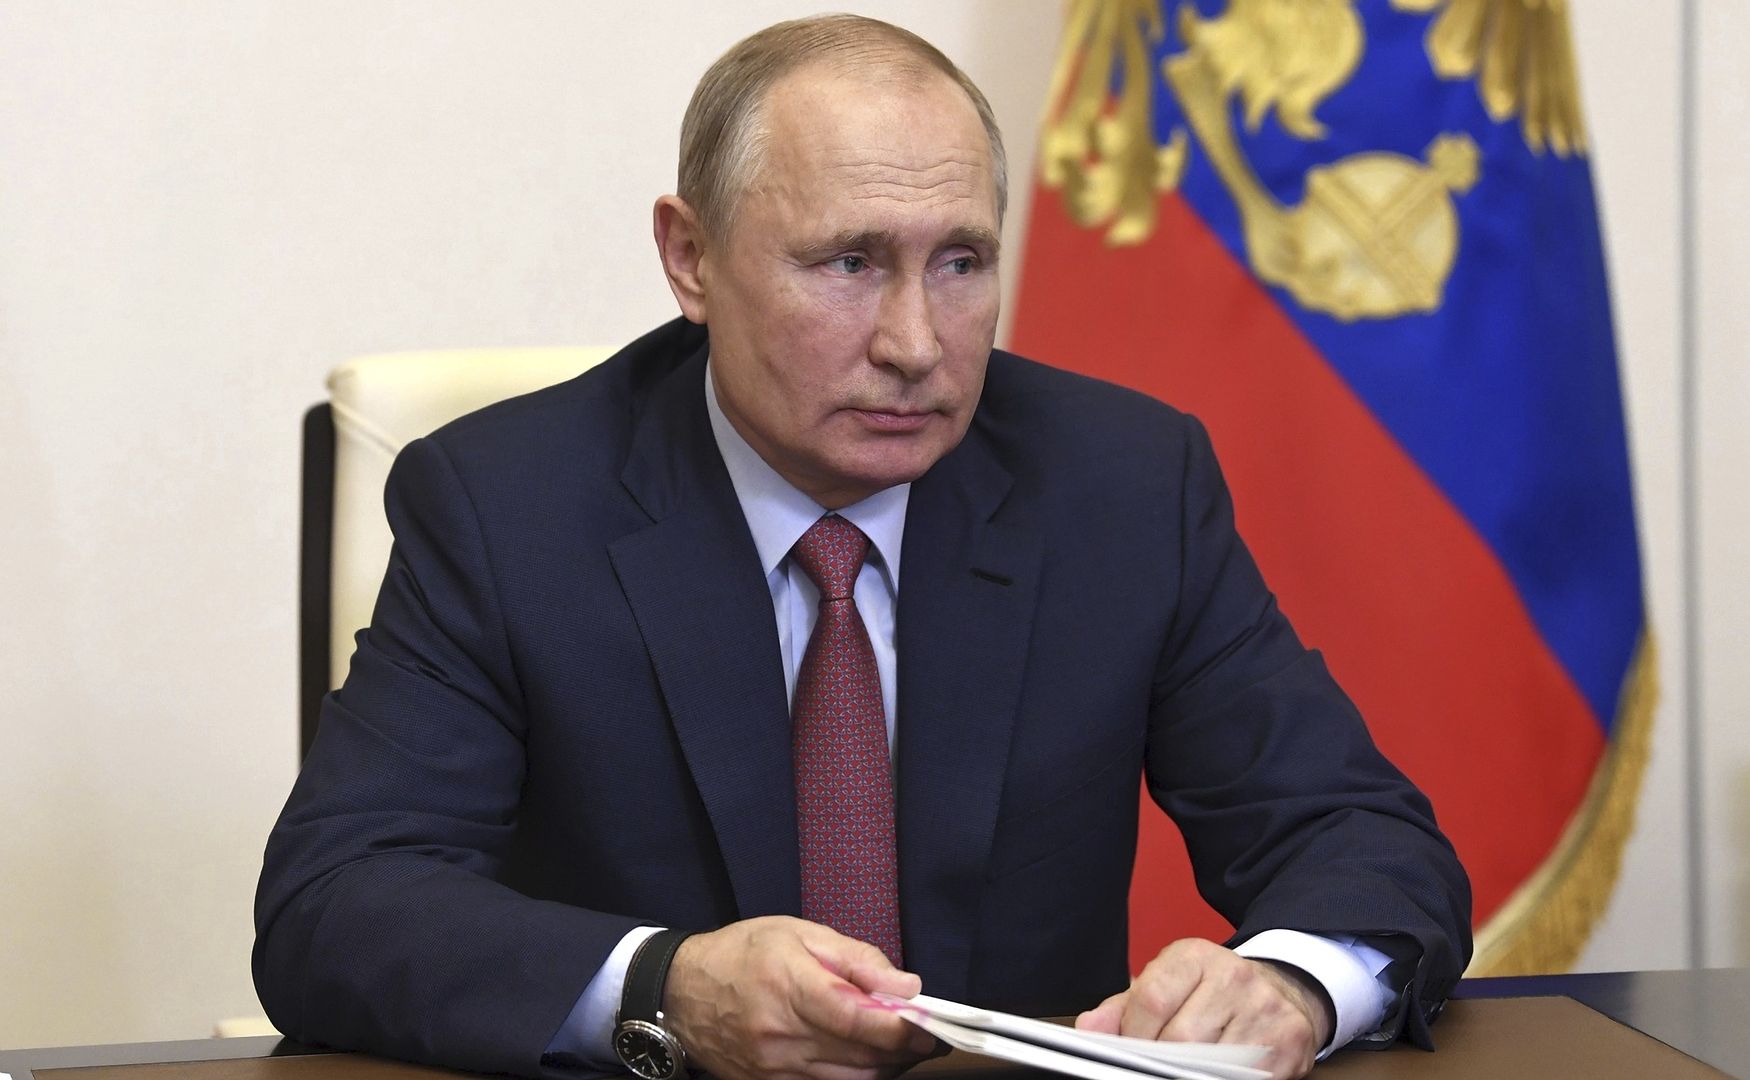 Putin dostanie Pokojową Nagrodę Nobla? W Internecie zawrzało